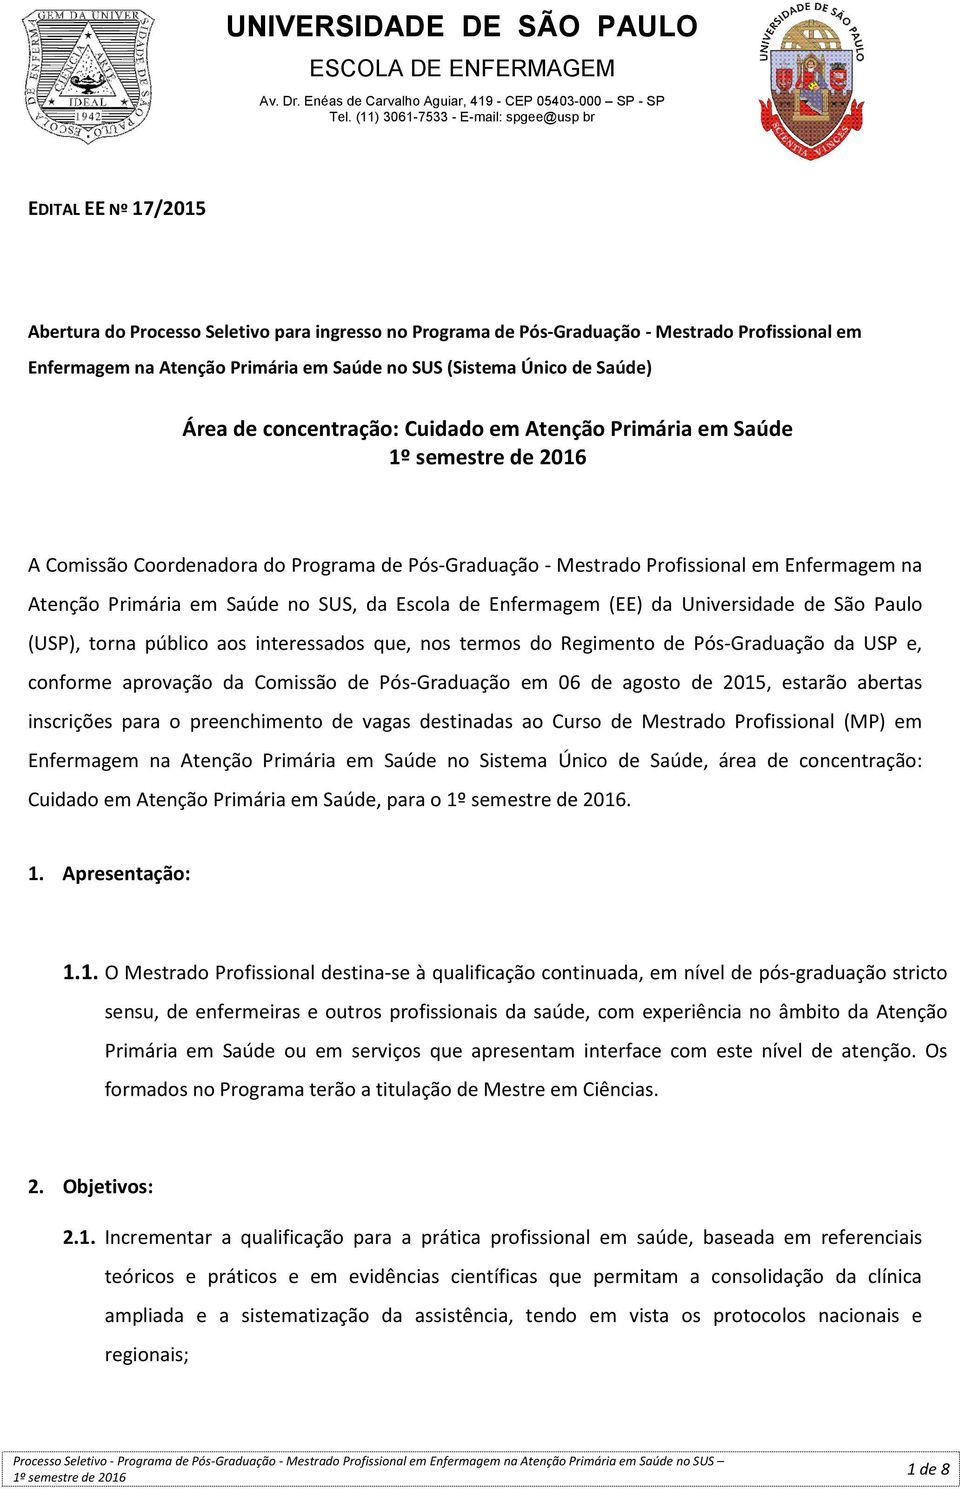 Enfermagem (EE) da Universidade de São Paulo (USP), torna público aos interessados que, nos termos do Regimento de Pós-Graduação da USP e, conforme aprovação da Comissão de Pós-Graduação em 06 de